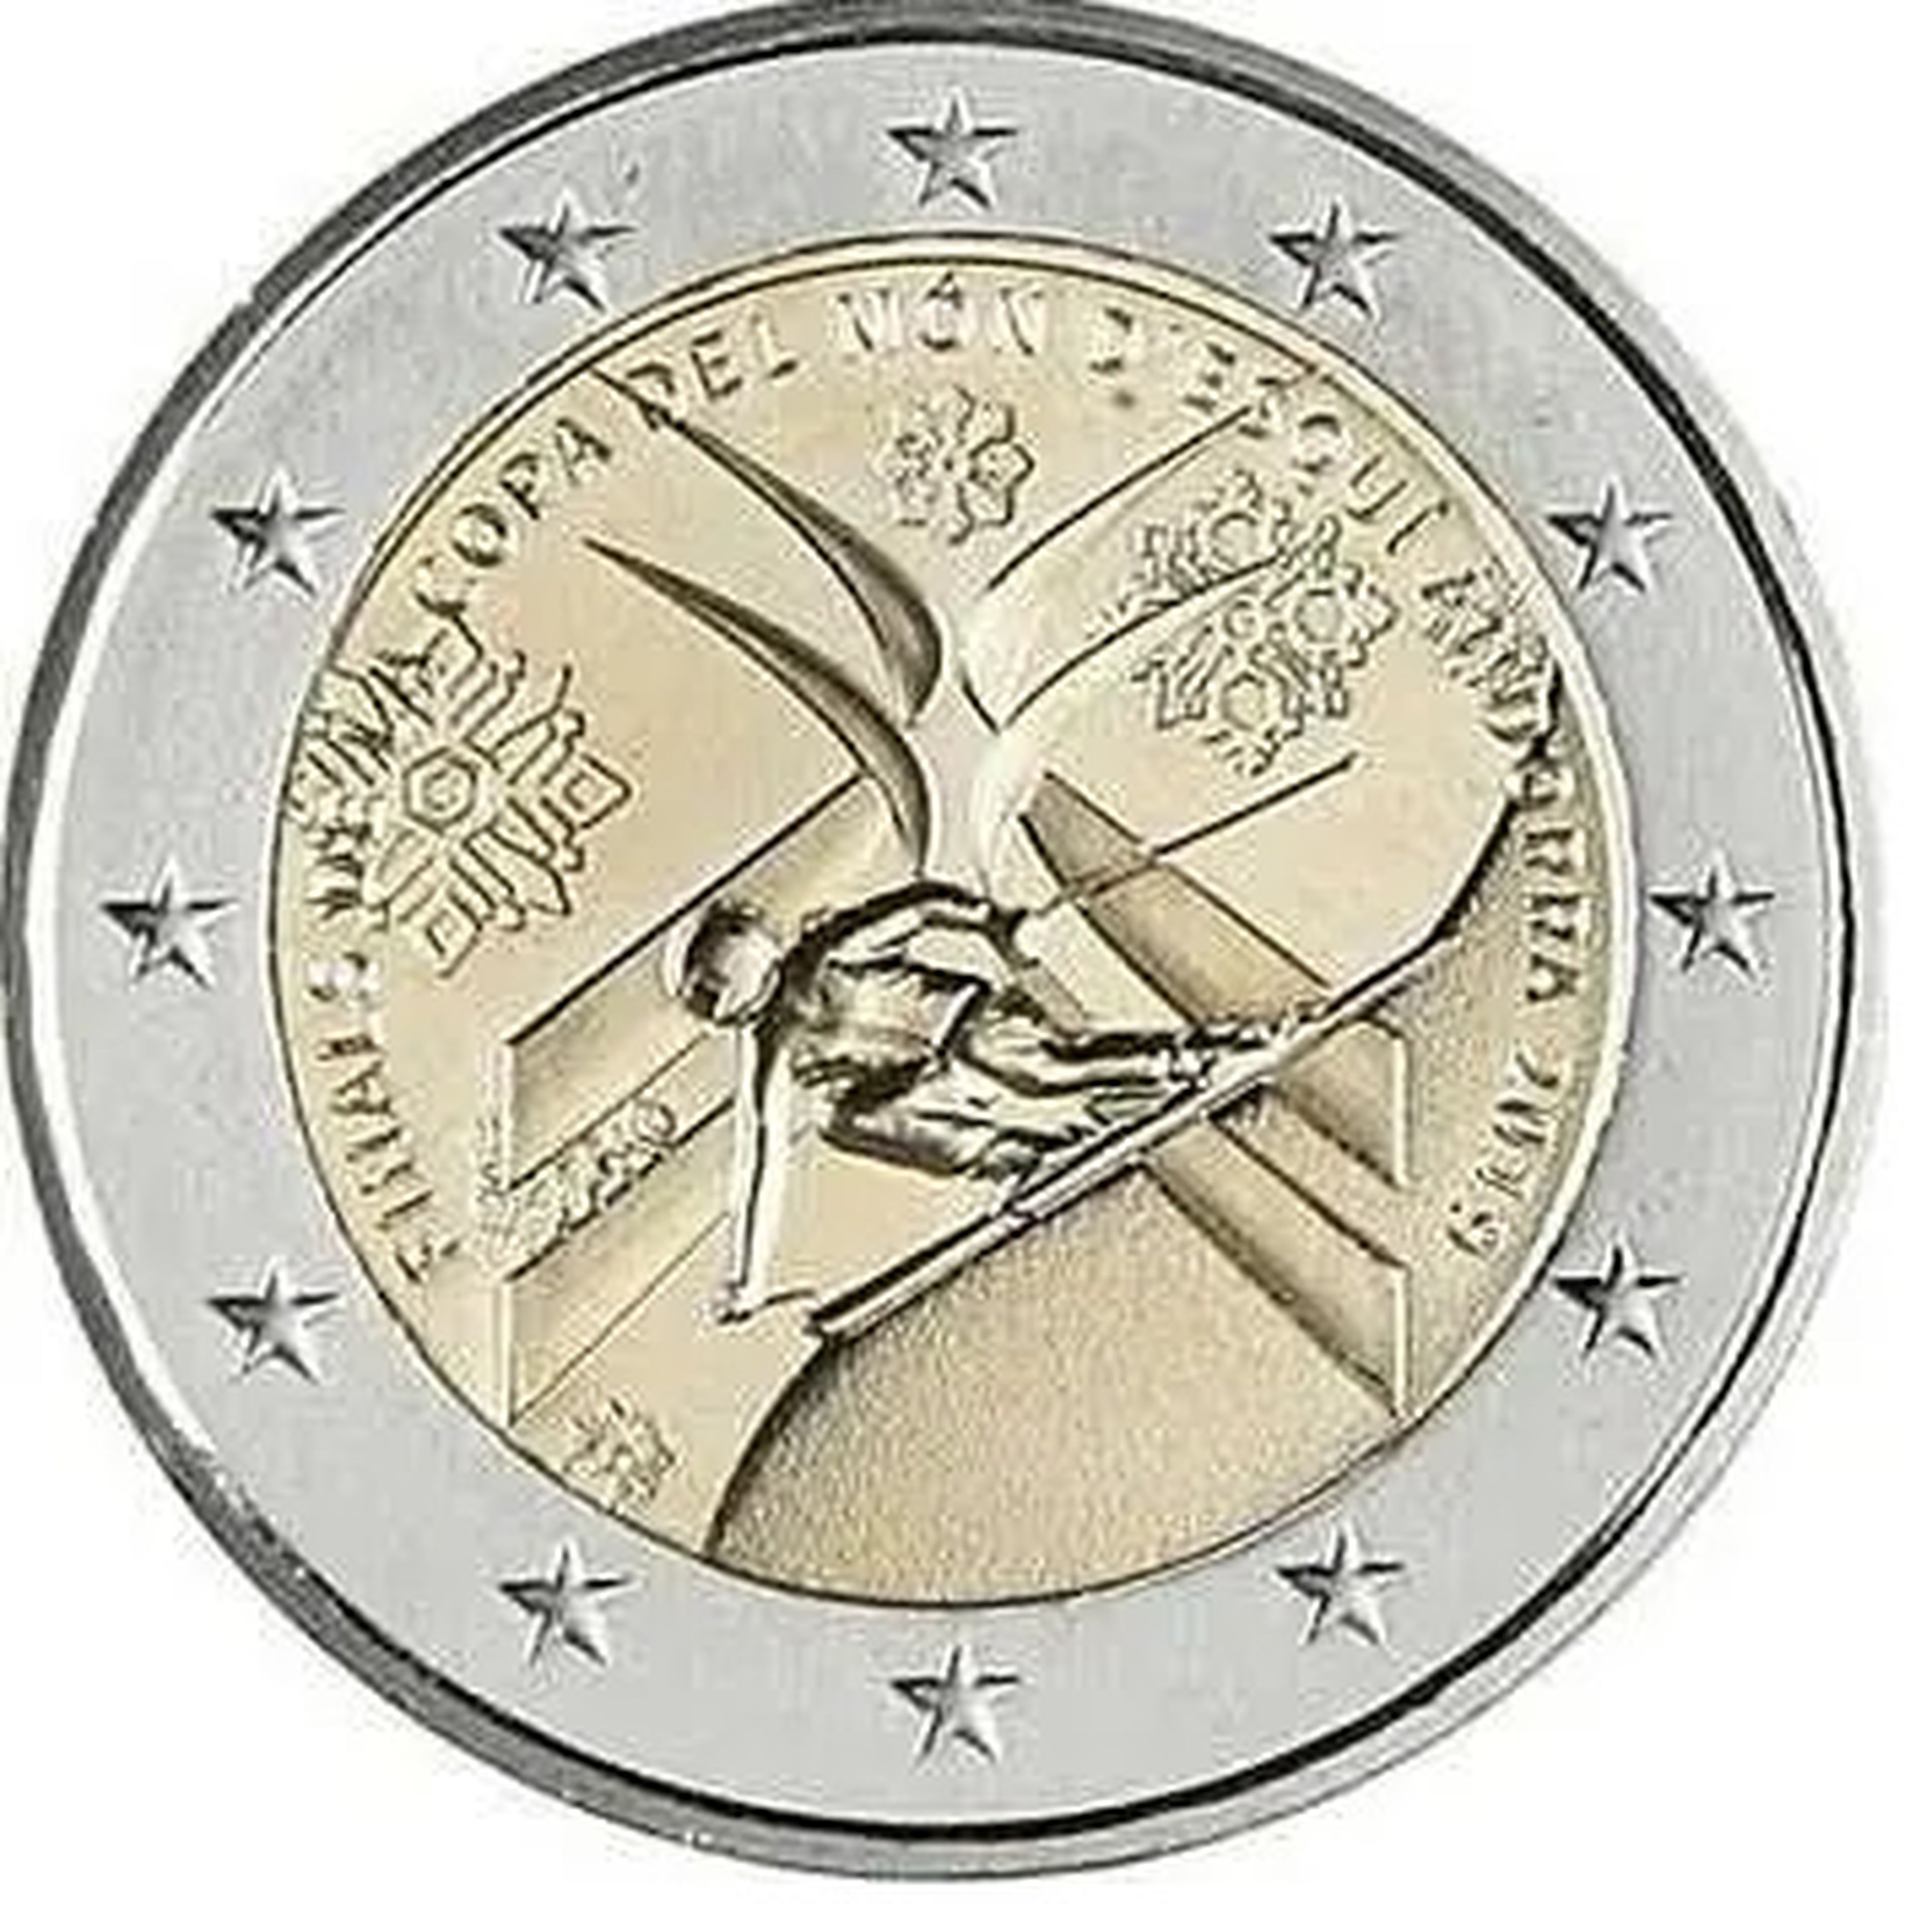 Moneda de Andorra de 2019